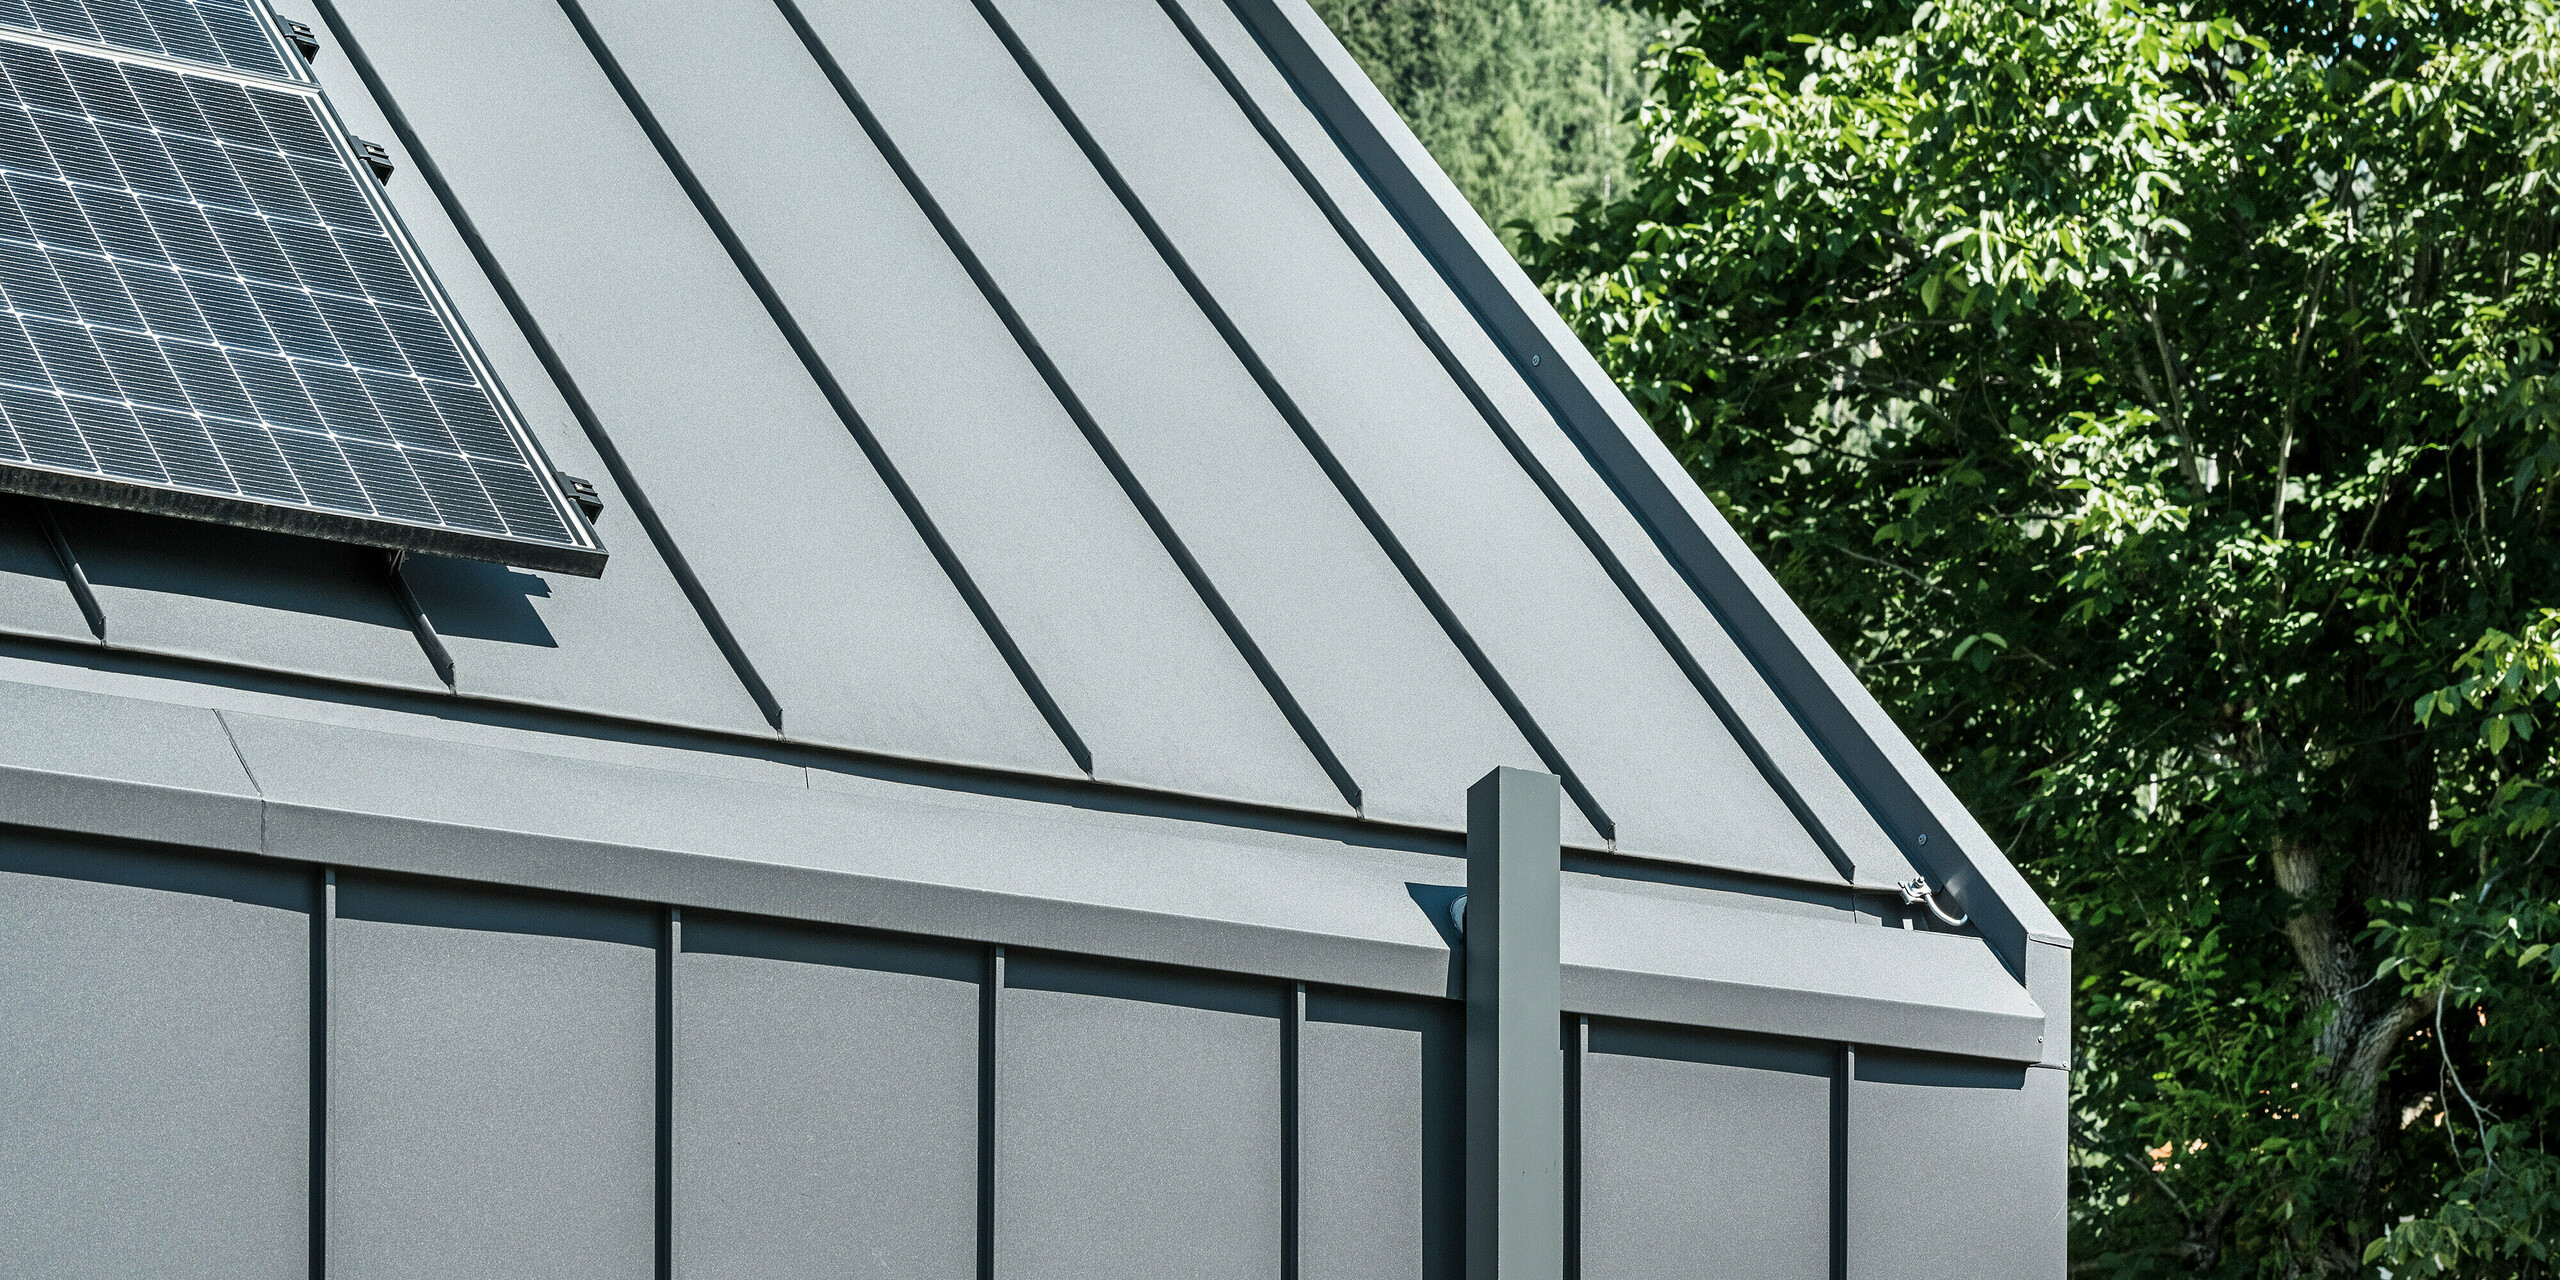 Detailní záběr střechy nebo fasády moderního rodinného domu v rakouském Pogier s udržitelným a trvanlivým pláštěm budovy od PREFA. Střecha a fasáda jsou opláštěny PREFALZ v barvě P.10 tmavě šedá, což zajišťuje elegantní a nadčasový vzhled. Dům je navíc vybaven kvalitním odvodněním střech, které v architektuře dokonale spojuje funkčnost a estetiku. Dešťová voda je odváděna čtvercovými trubkami PREFA, které jsou – podobně jako střecha a fasáda – rovněž v tmavě šedé barvě.Na levém okraji obrázku je na střeše vidět fotovoltaický systém, který dále demonstruje udržitelný koncept budovy. V pozadí jsou vidět zelené stromy a modrá obloha.